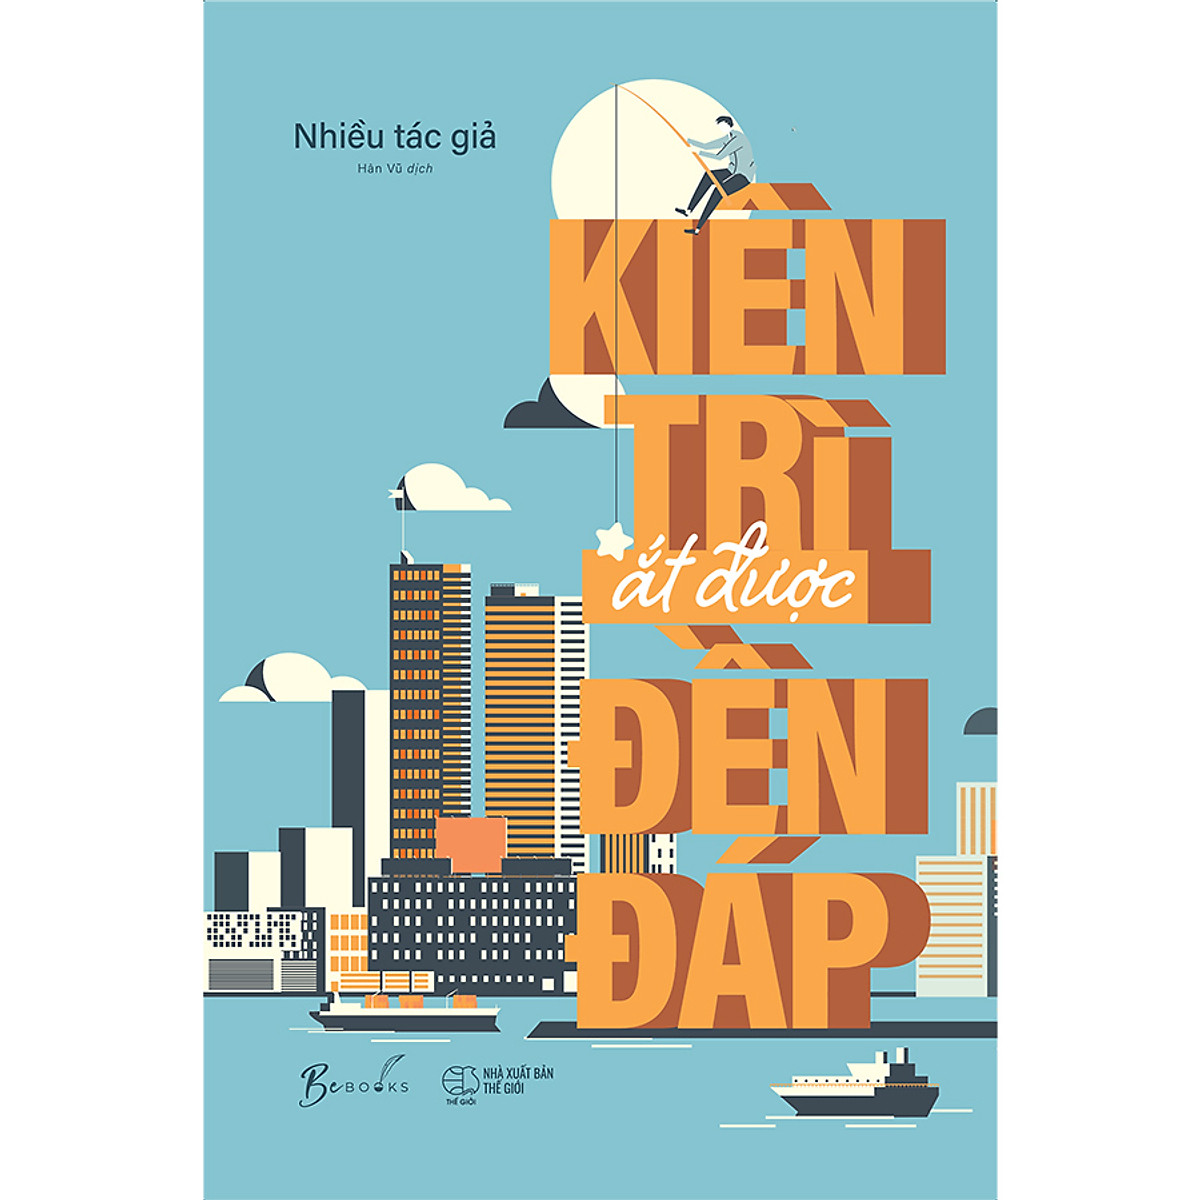 04-kien-tri-at-duoc-den-dap